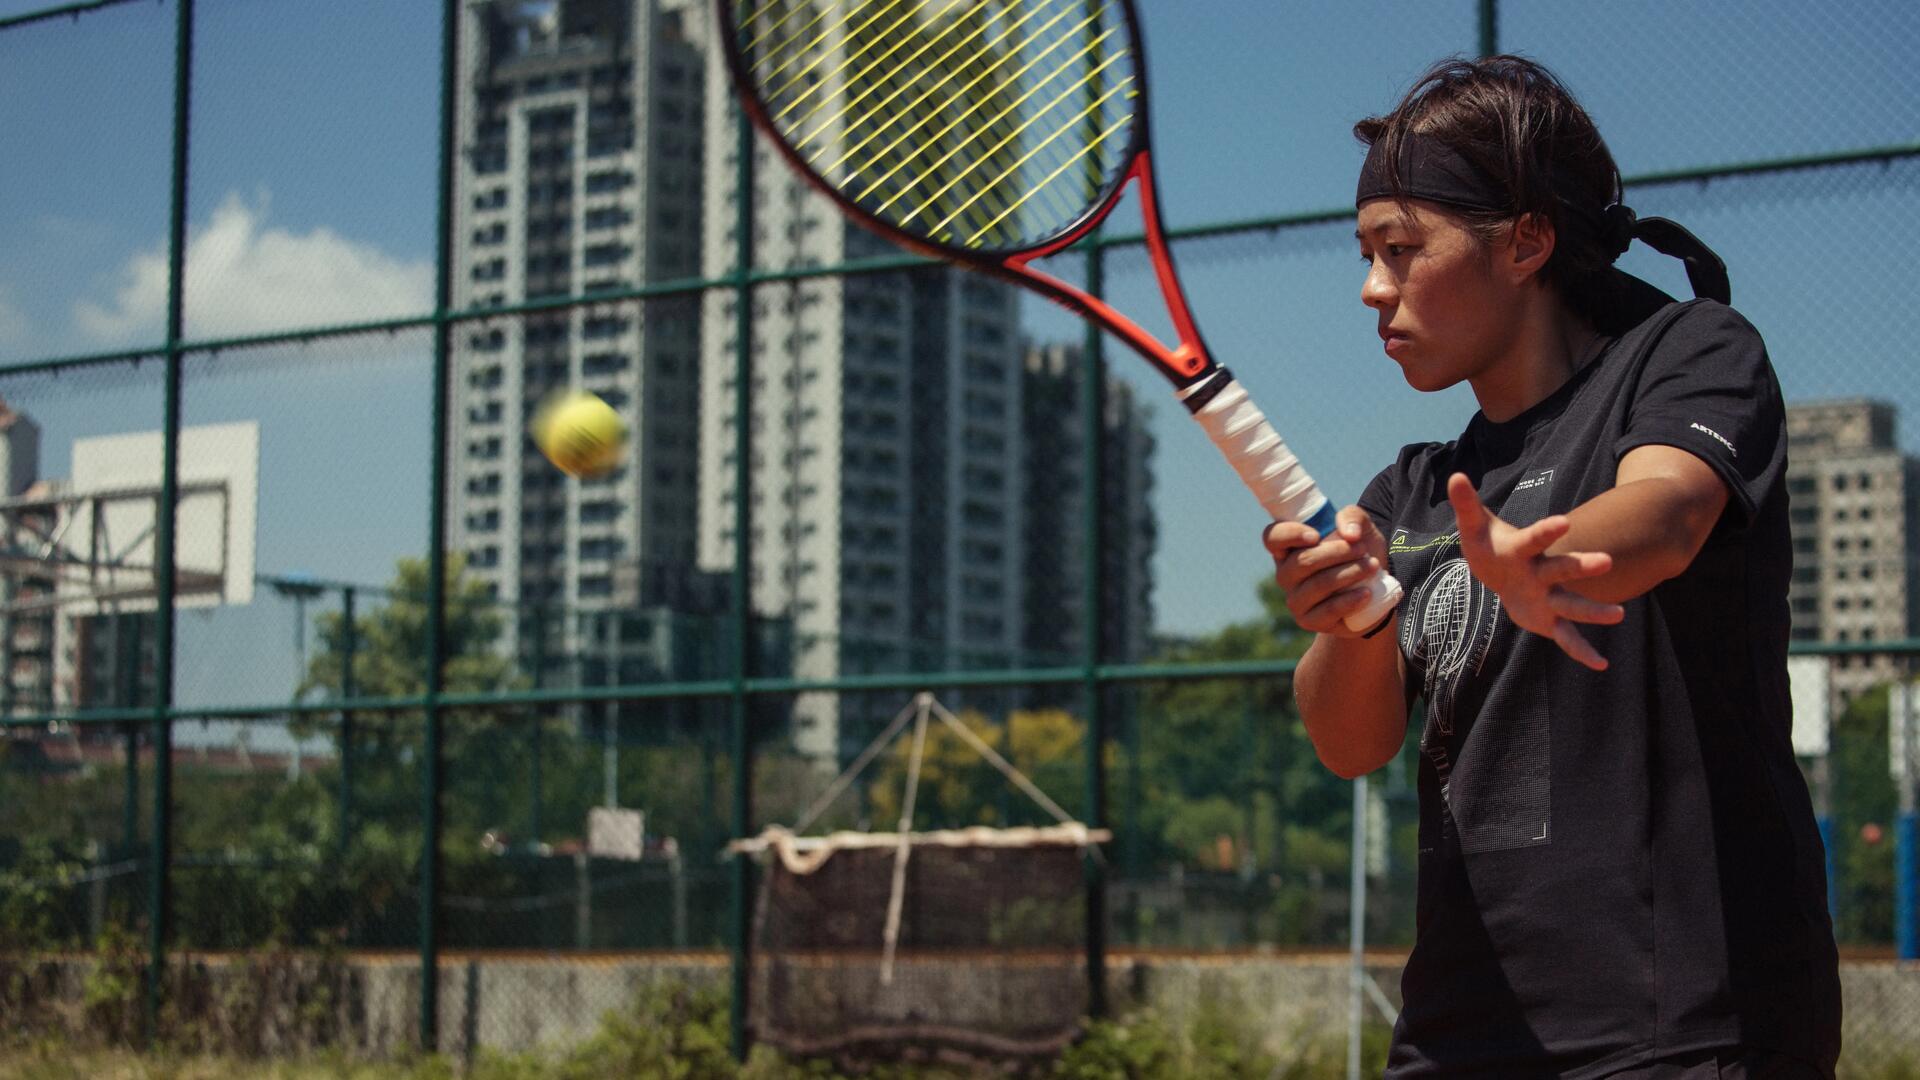 Bild einer Frau, die auf einem Outdoor-Tennisfeld Tennis spielt